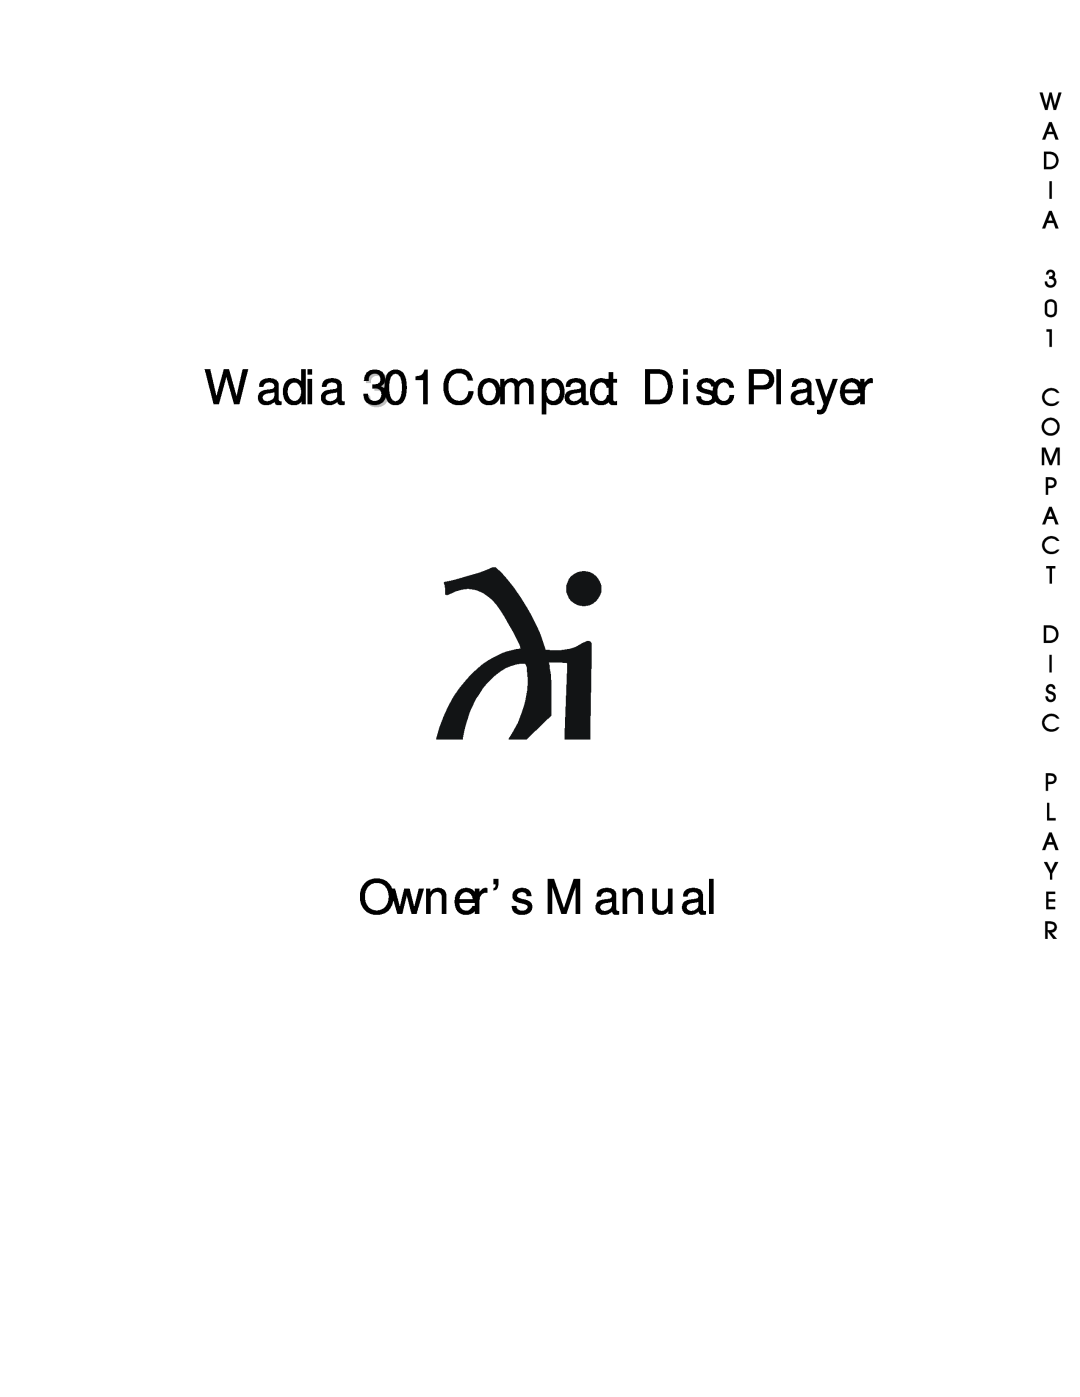 Wadia Digital 301 owner manual W A D I A 3 0 1 C O M P A C T D I S C P L A Y E R 